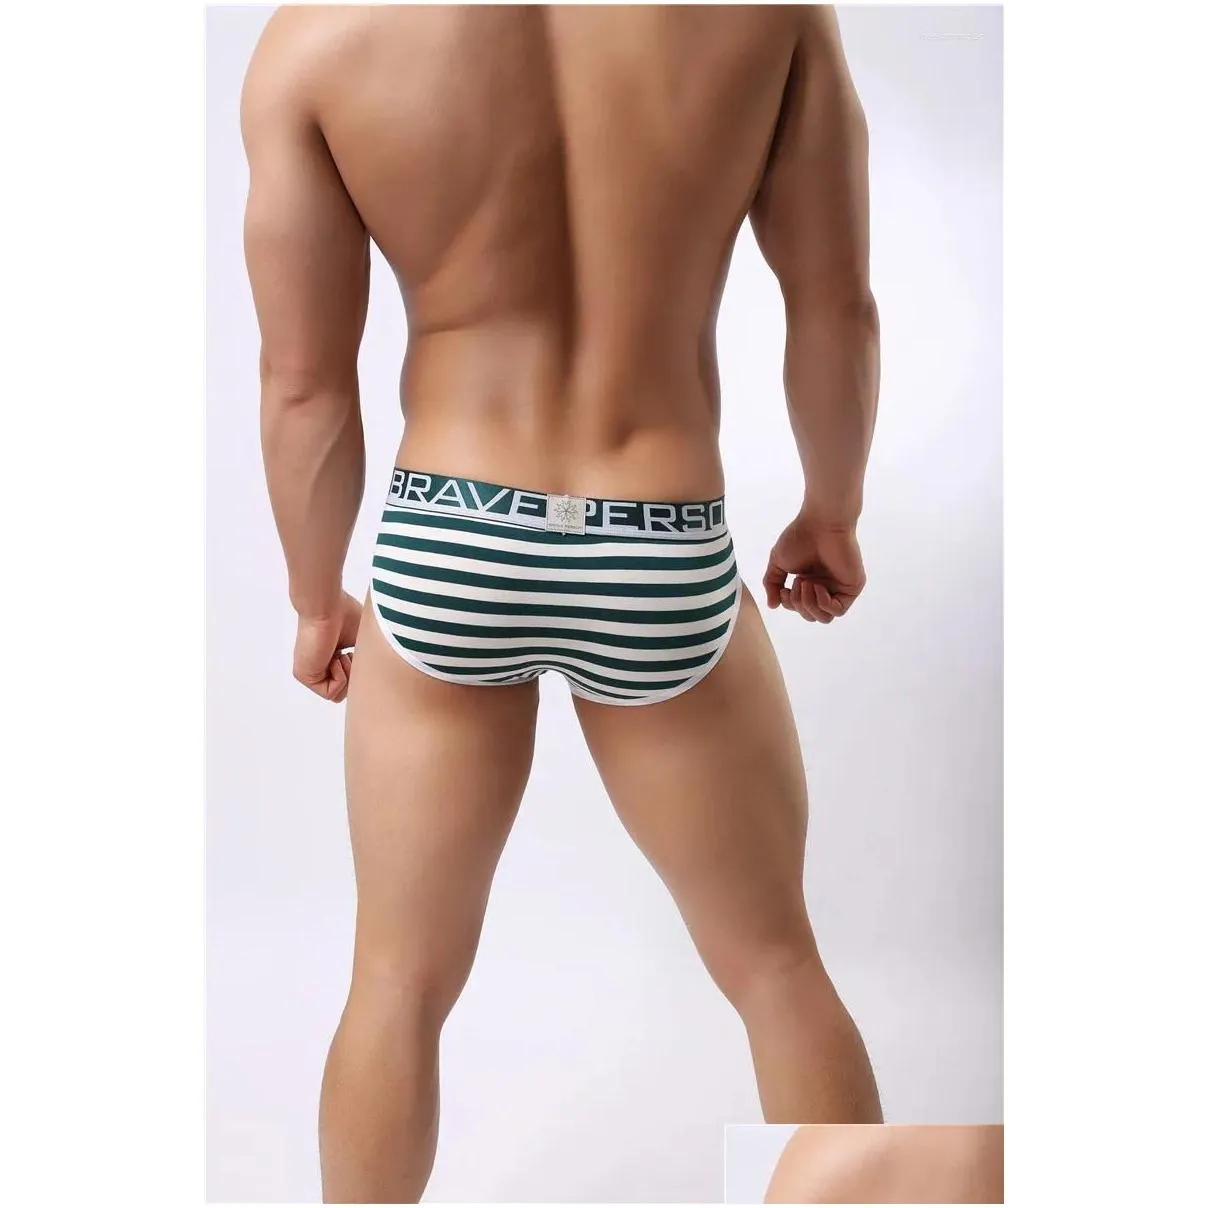 Underpants Men`s Solid Briefs Cotton Underwear Man Low Waist Cross Striped Underwears Brief Men Calzoncillos Male Sexy Gay